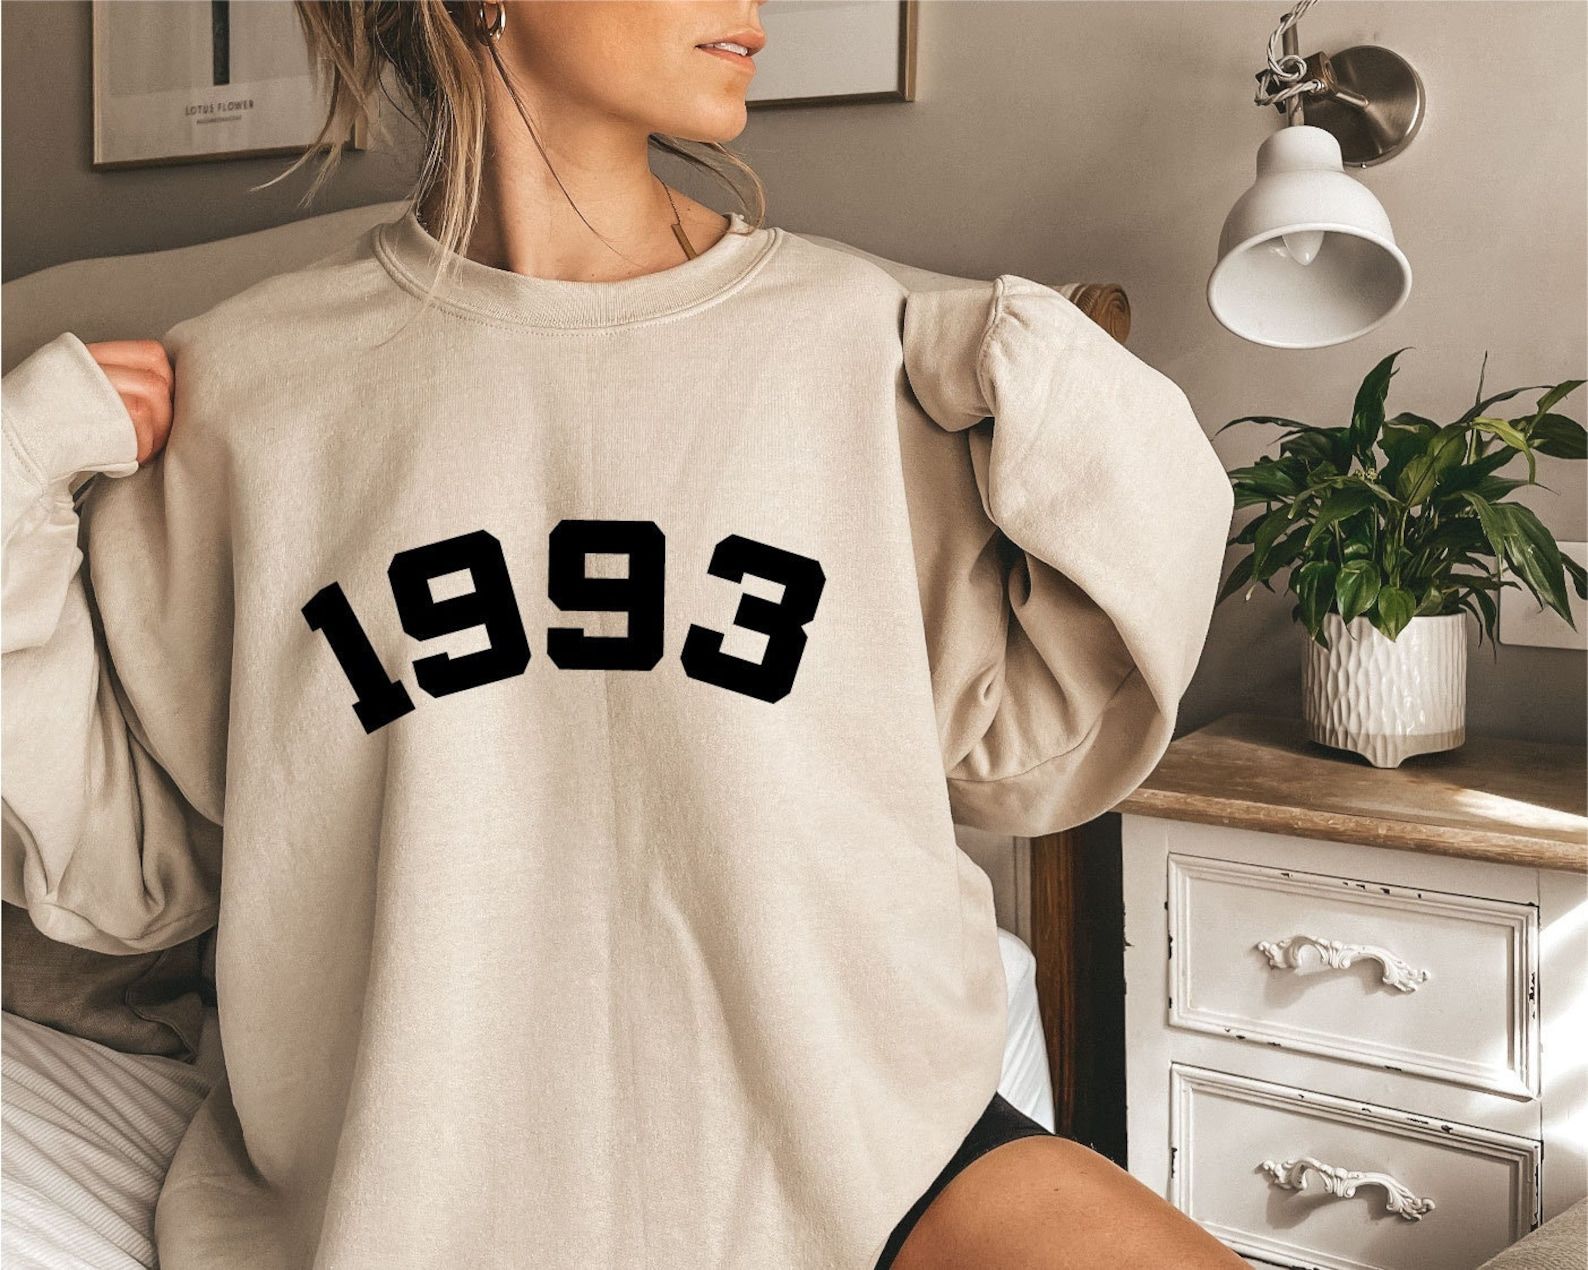 Customizable 1993 Sweatshirt